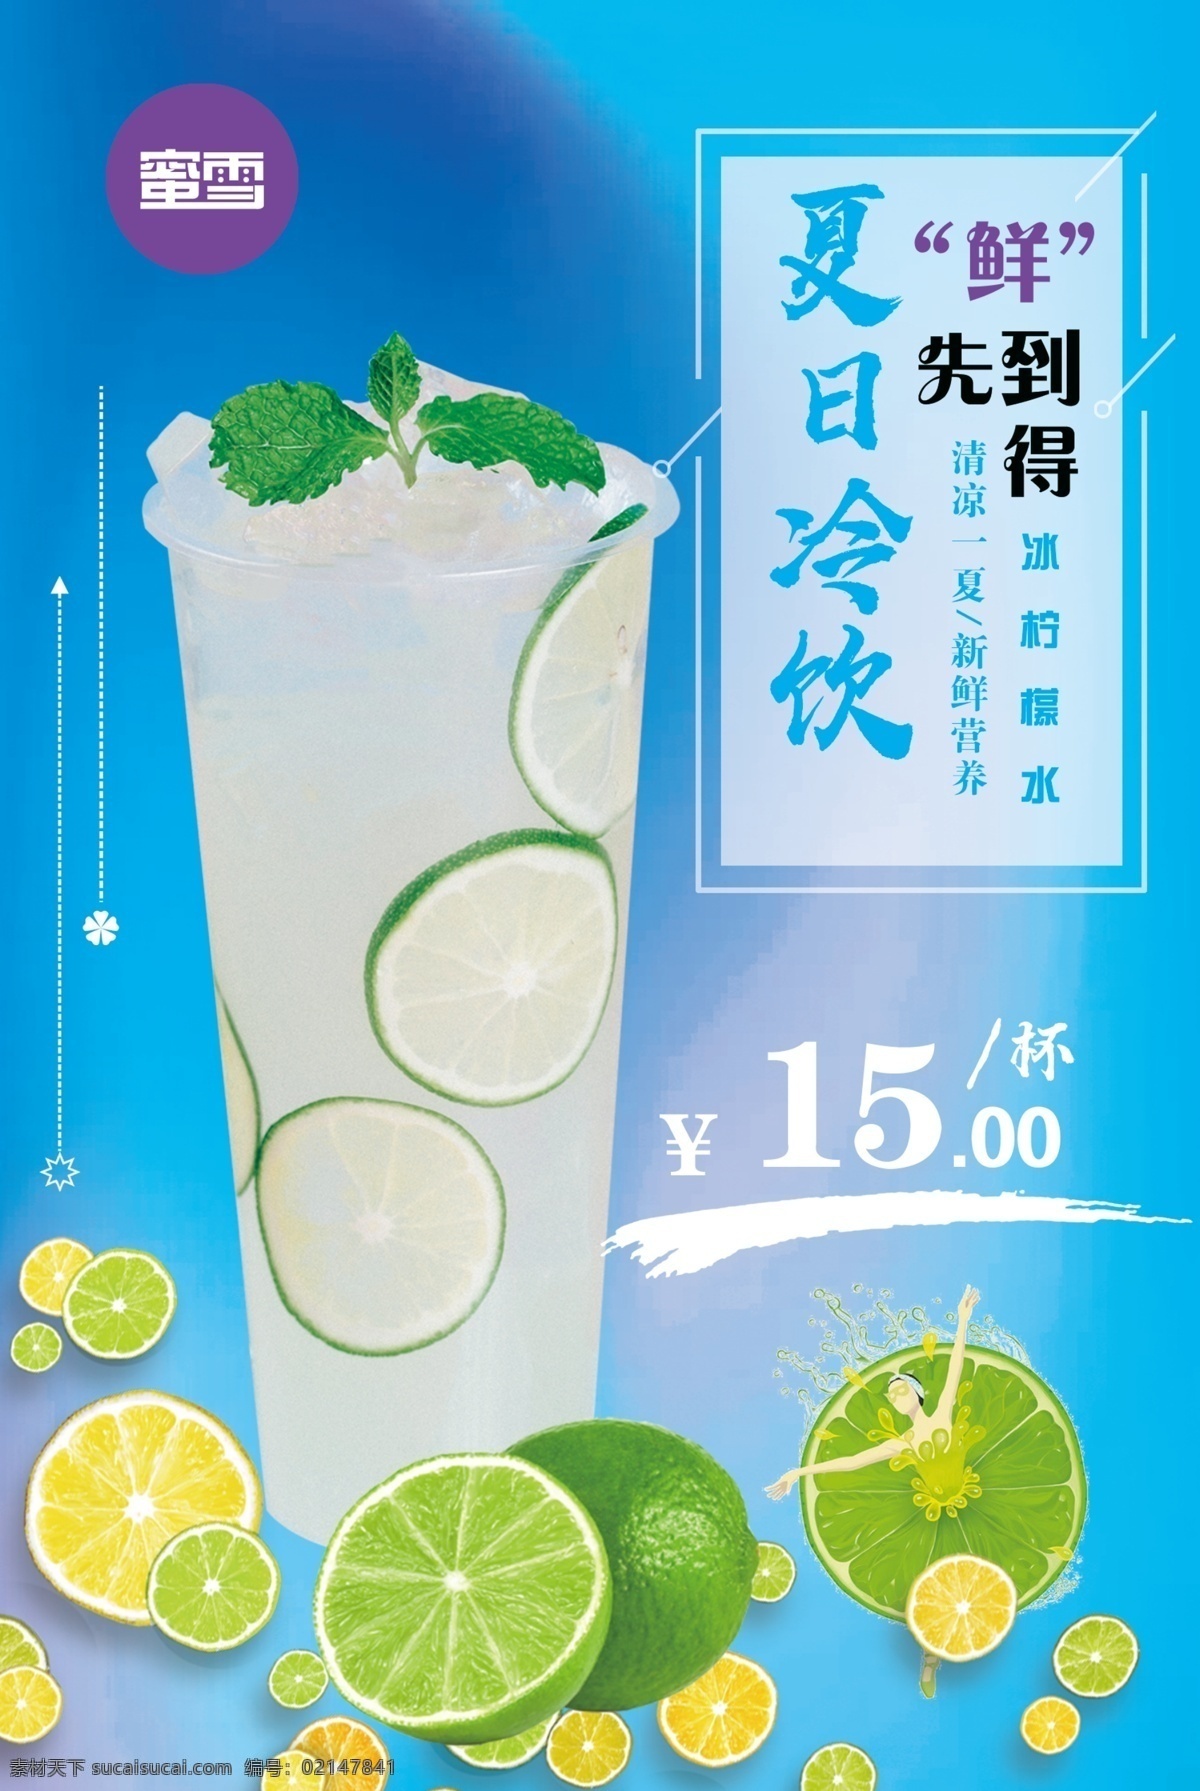 夏日冷饮 冰柠檬水 柠檬水海报 果汁海报 海报 鲜果汁 青柠饮品 宣传彩页